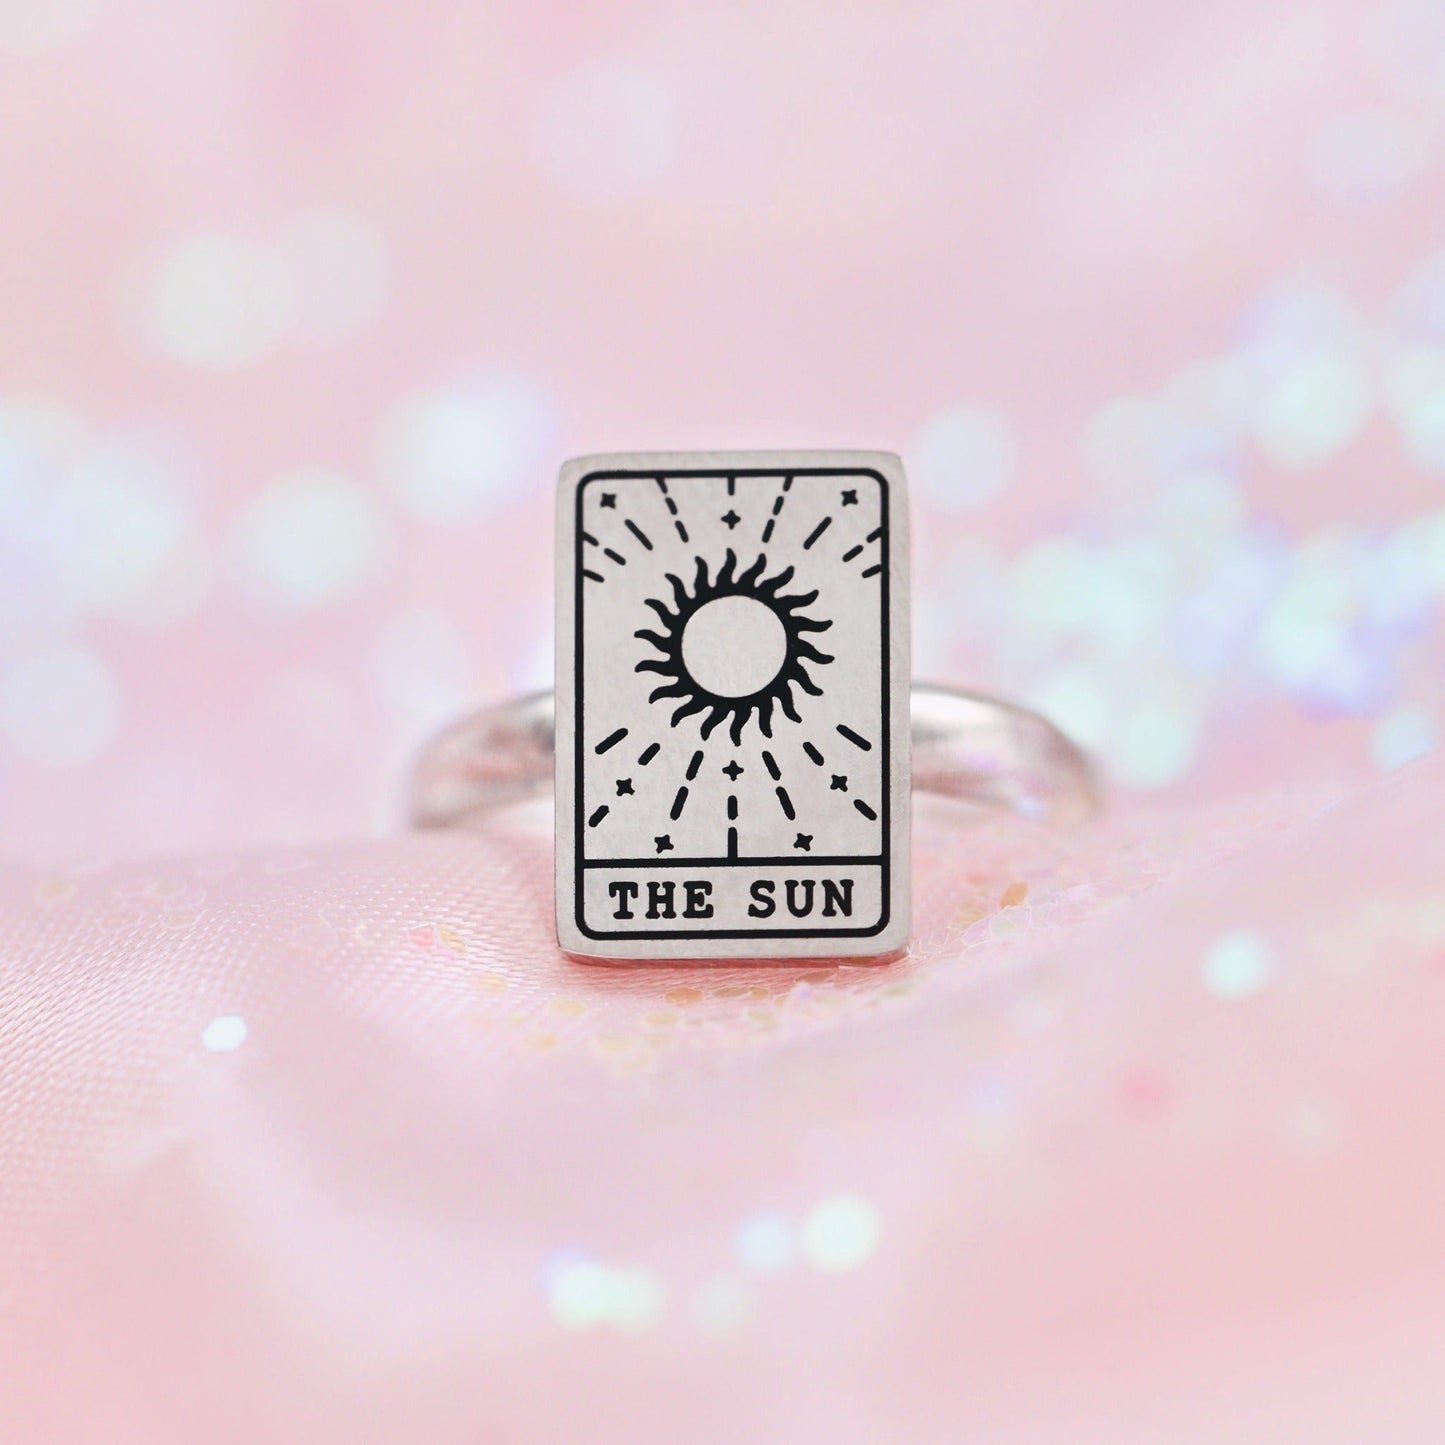 The Sun Tarot Card Ring